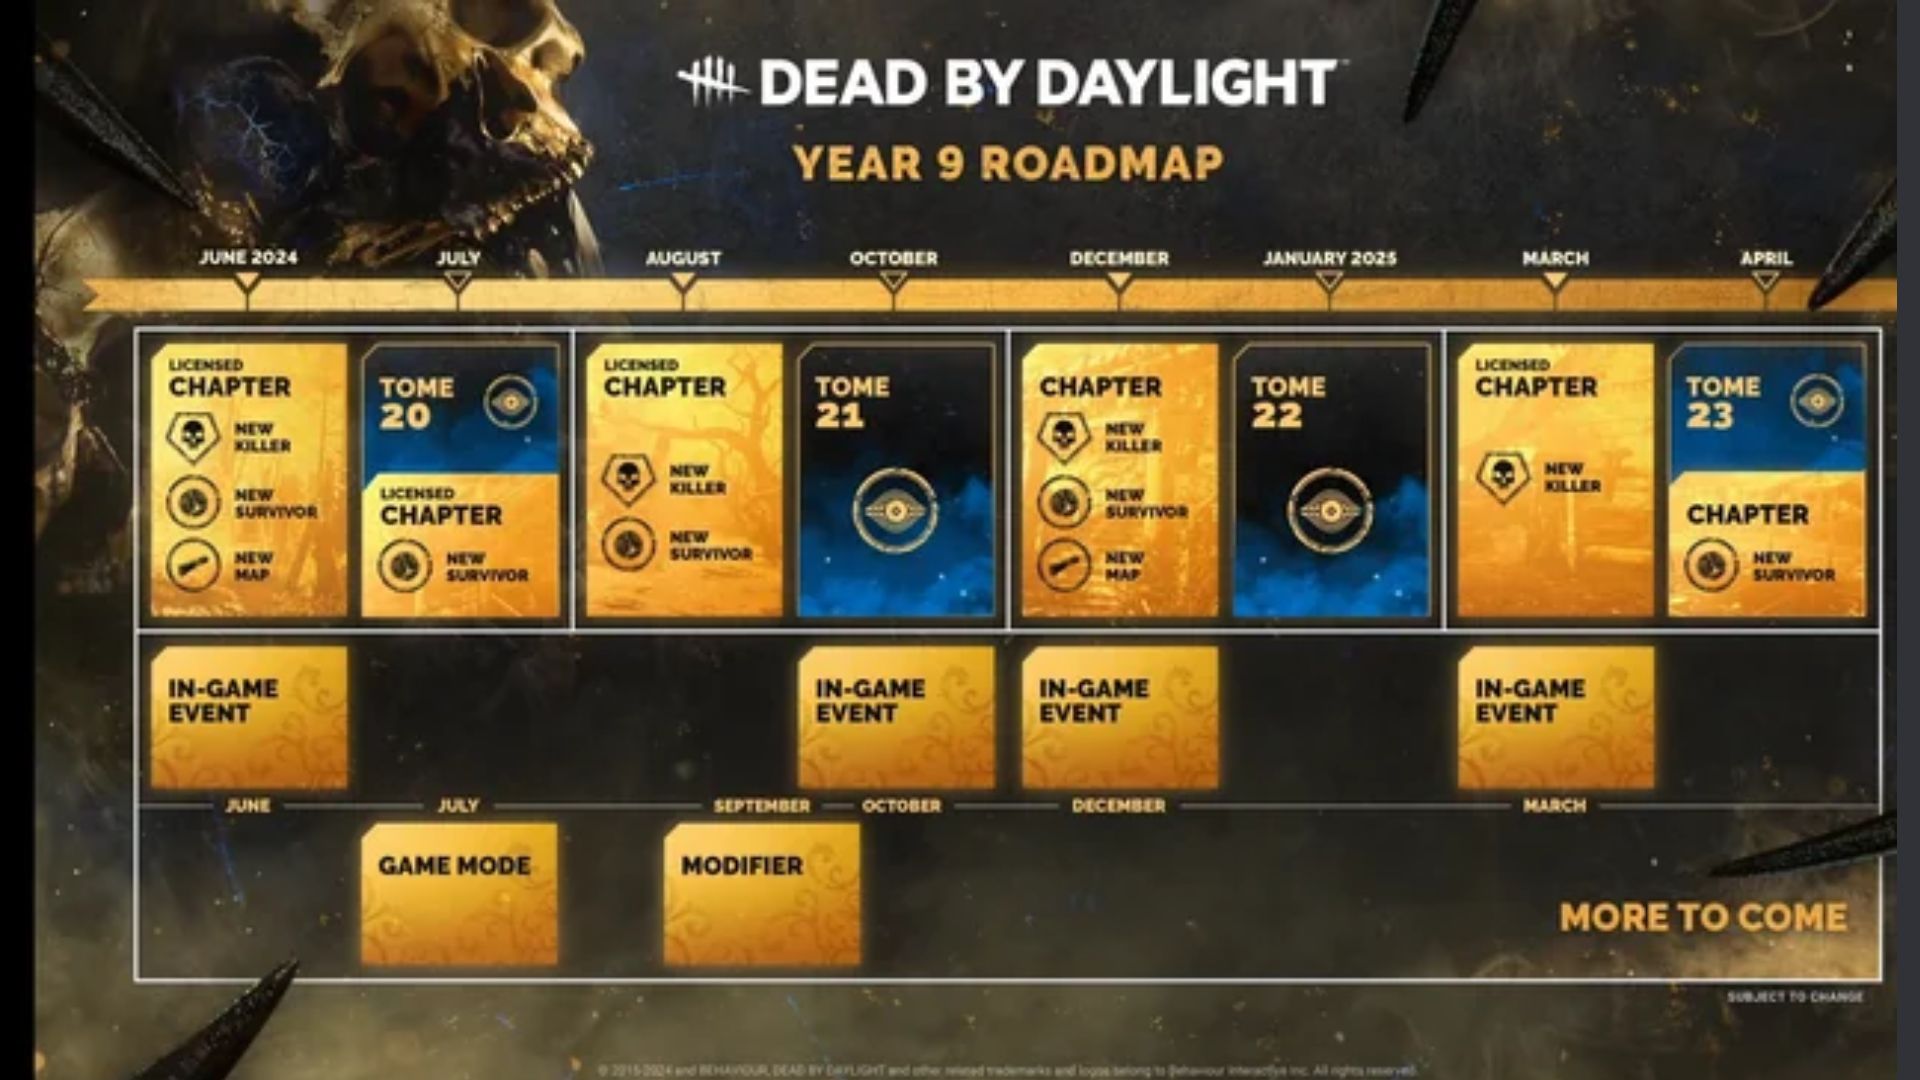 DBD year 9 roadmap